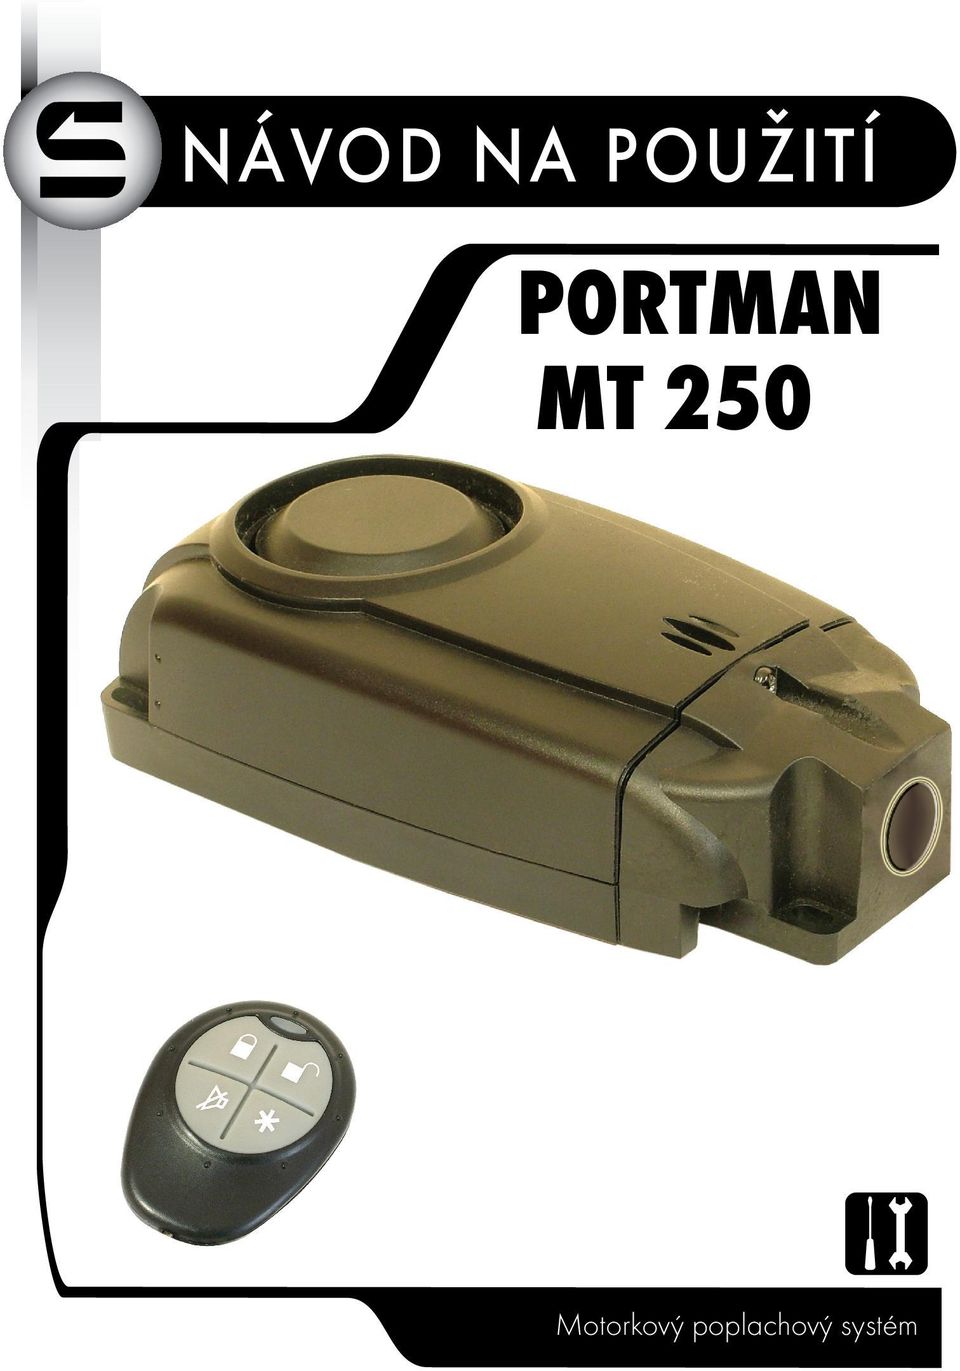 PORTMAN MT 250